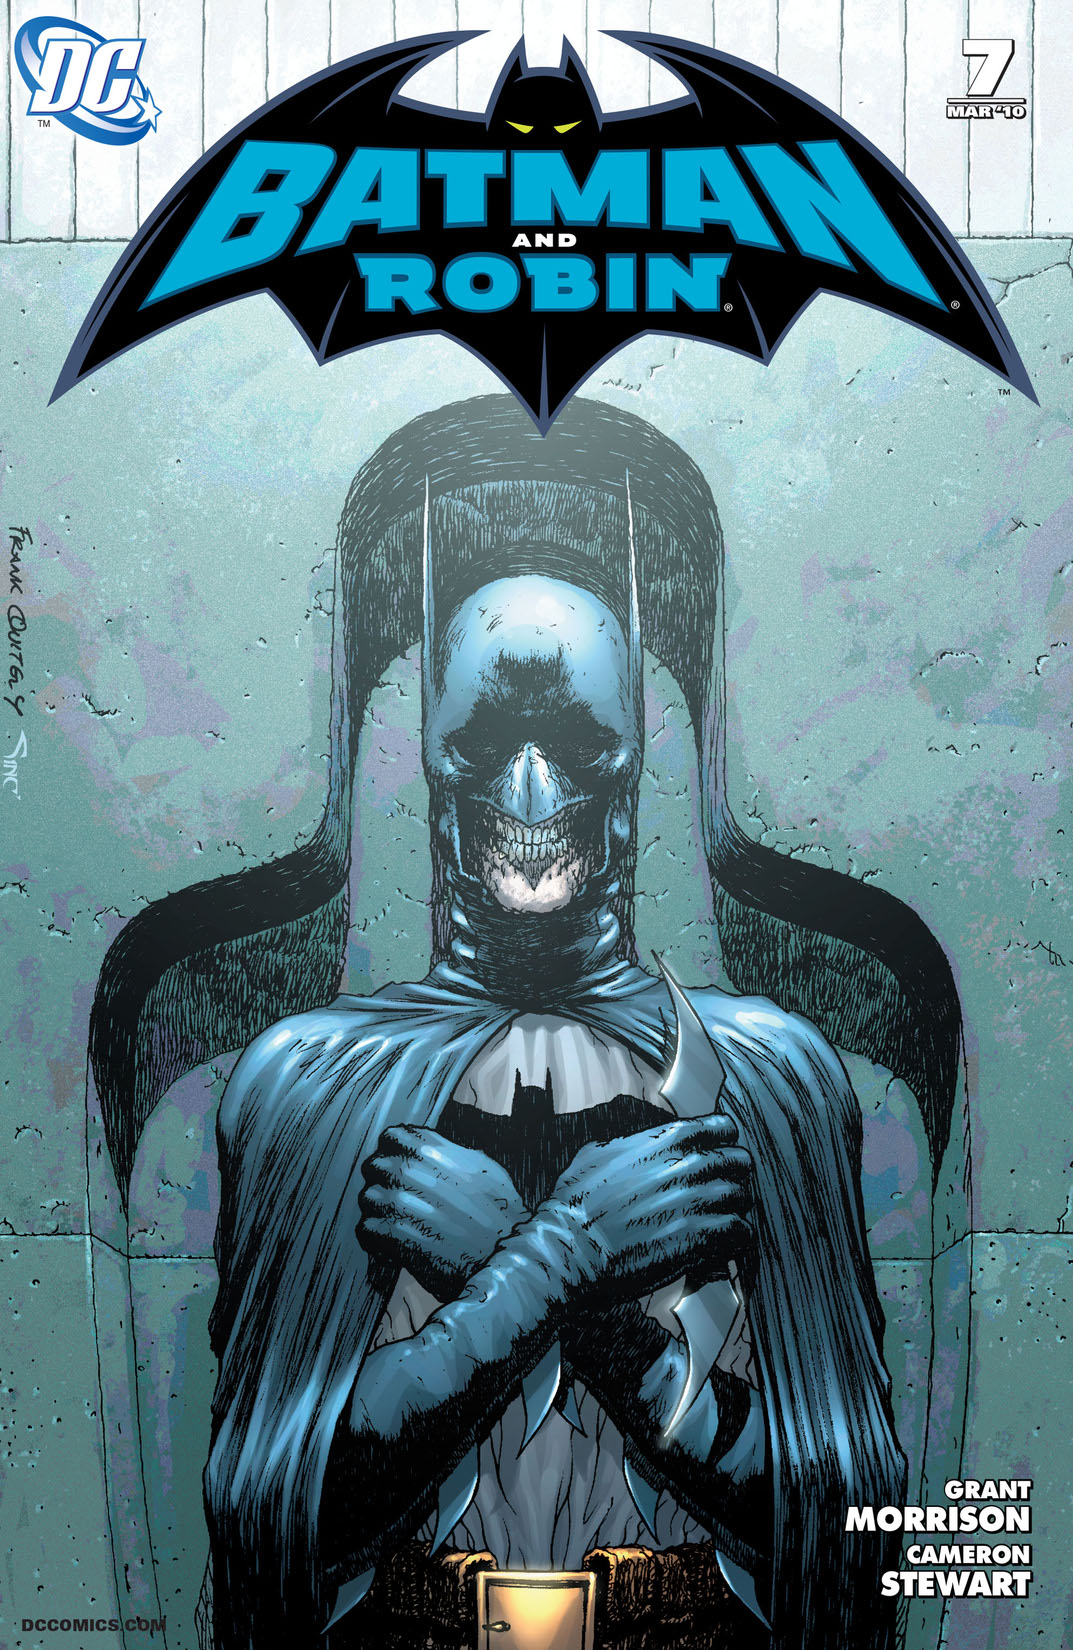 Batman & Robin (2009-) #7 preview images